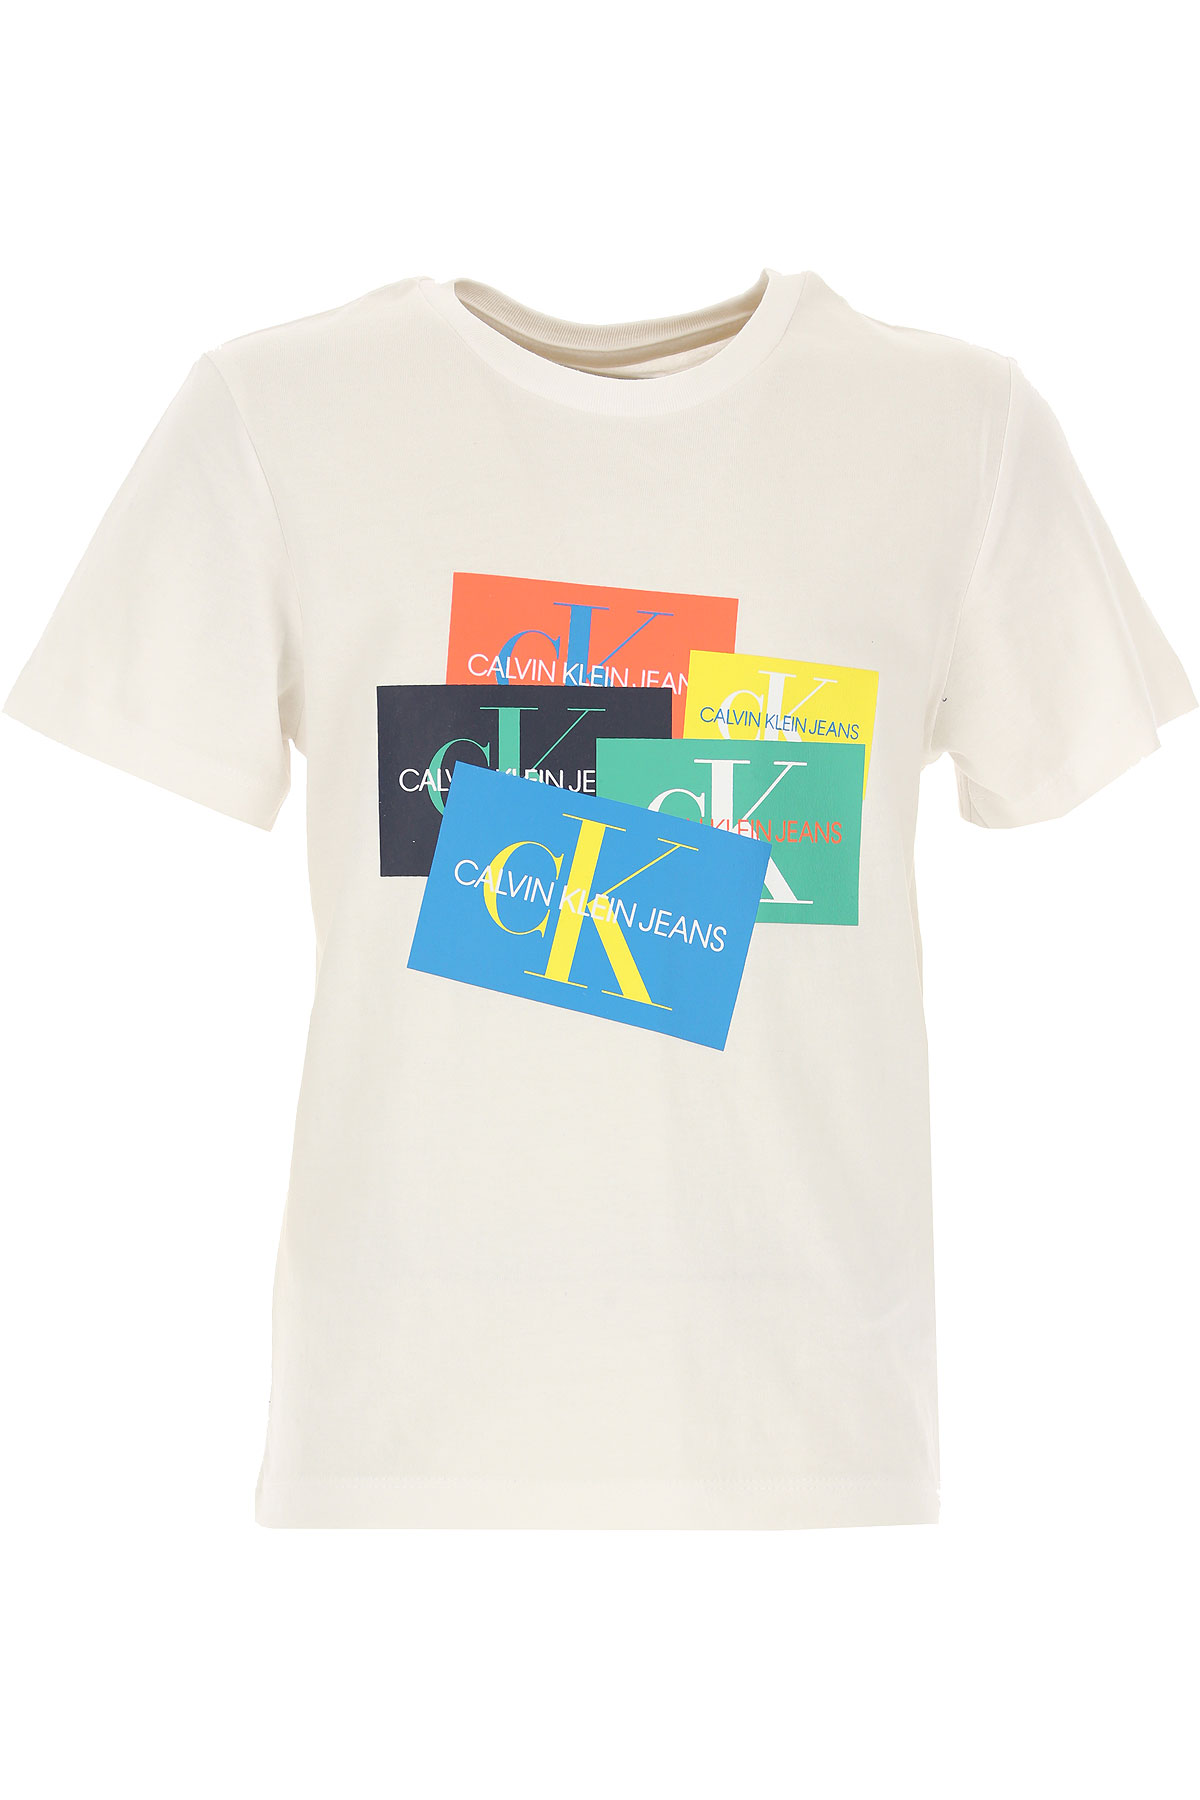 Calvin Klein Kinder T-Shirt für Jungen Günstig im Sale, Weiss, Baumwolle, 2017, 10Y 14Y 16Y 4Y 6Y 8Y